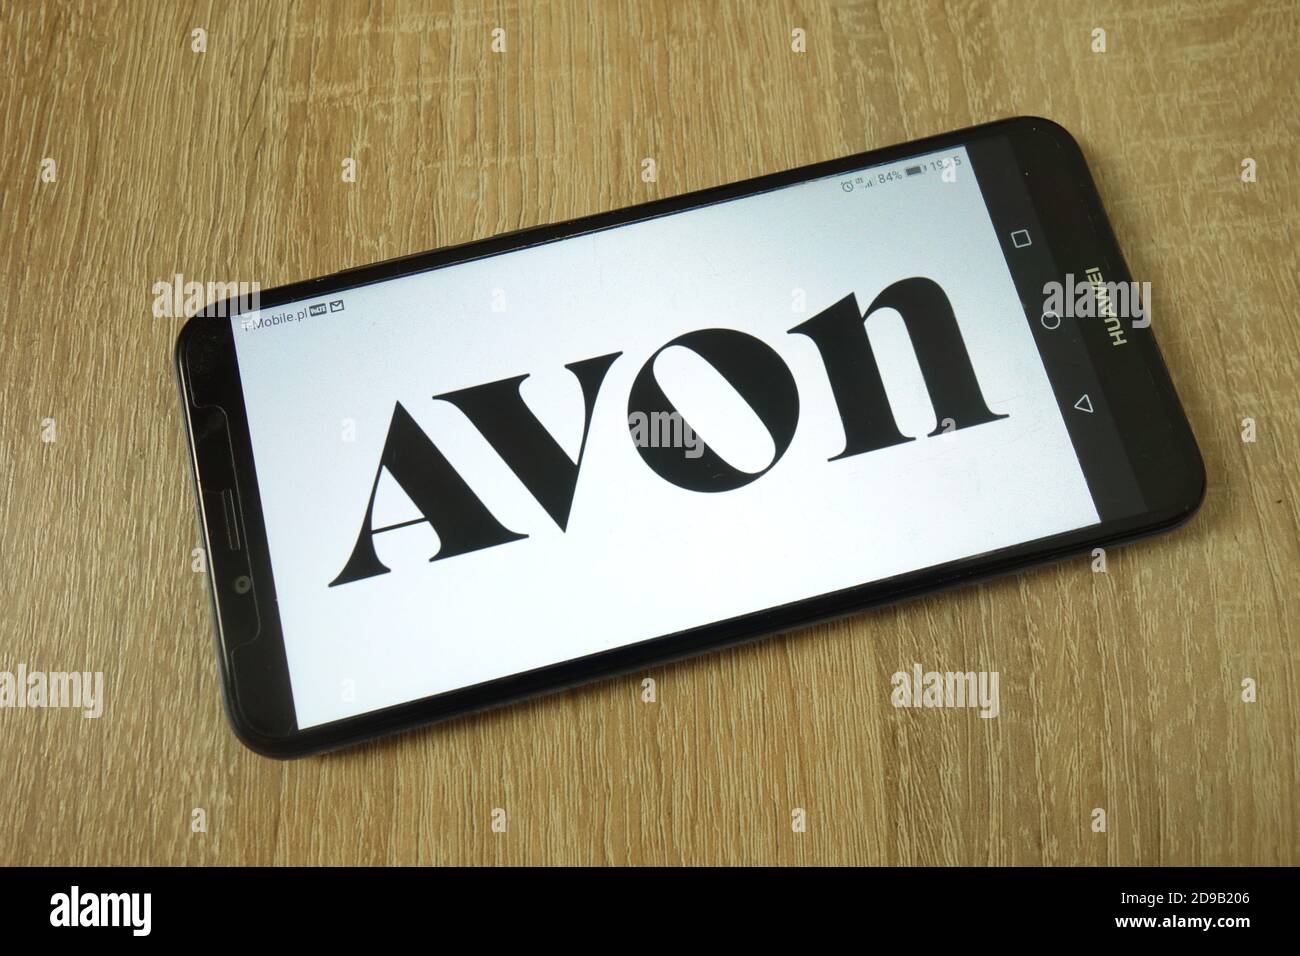 KONSKIE, POLEN - 11. Juni 2019: Das Firmenlogo von Avon Products Inc. Wird auf dem Mobiltelefon angezeigt Stockfoto